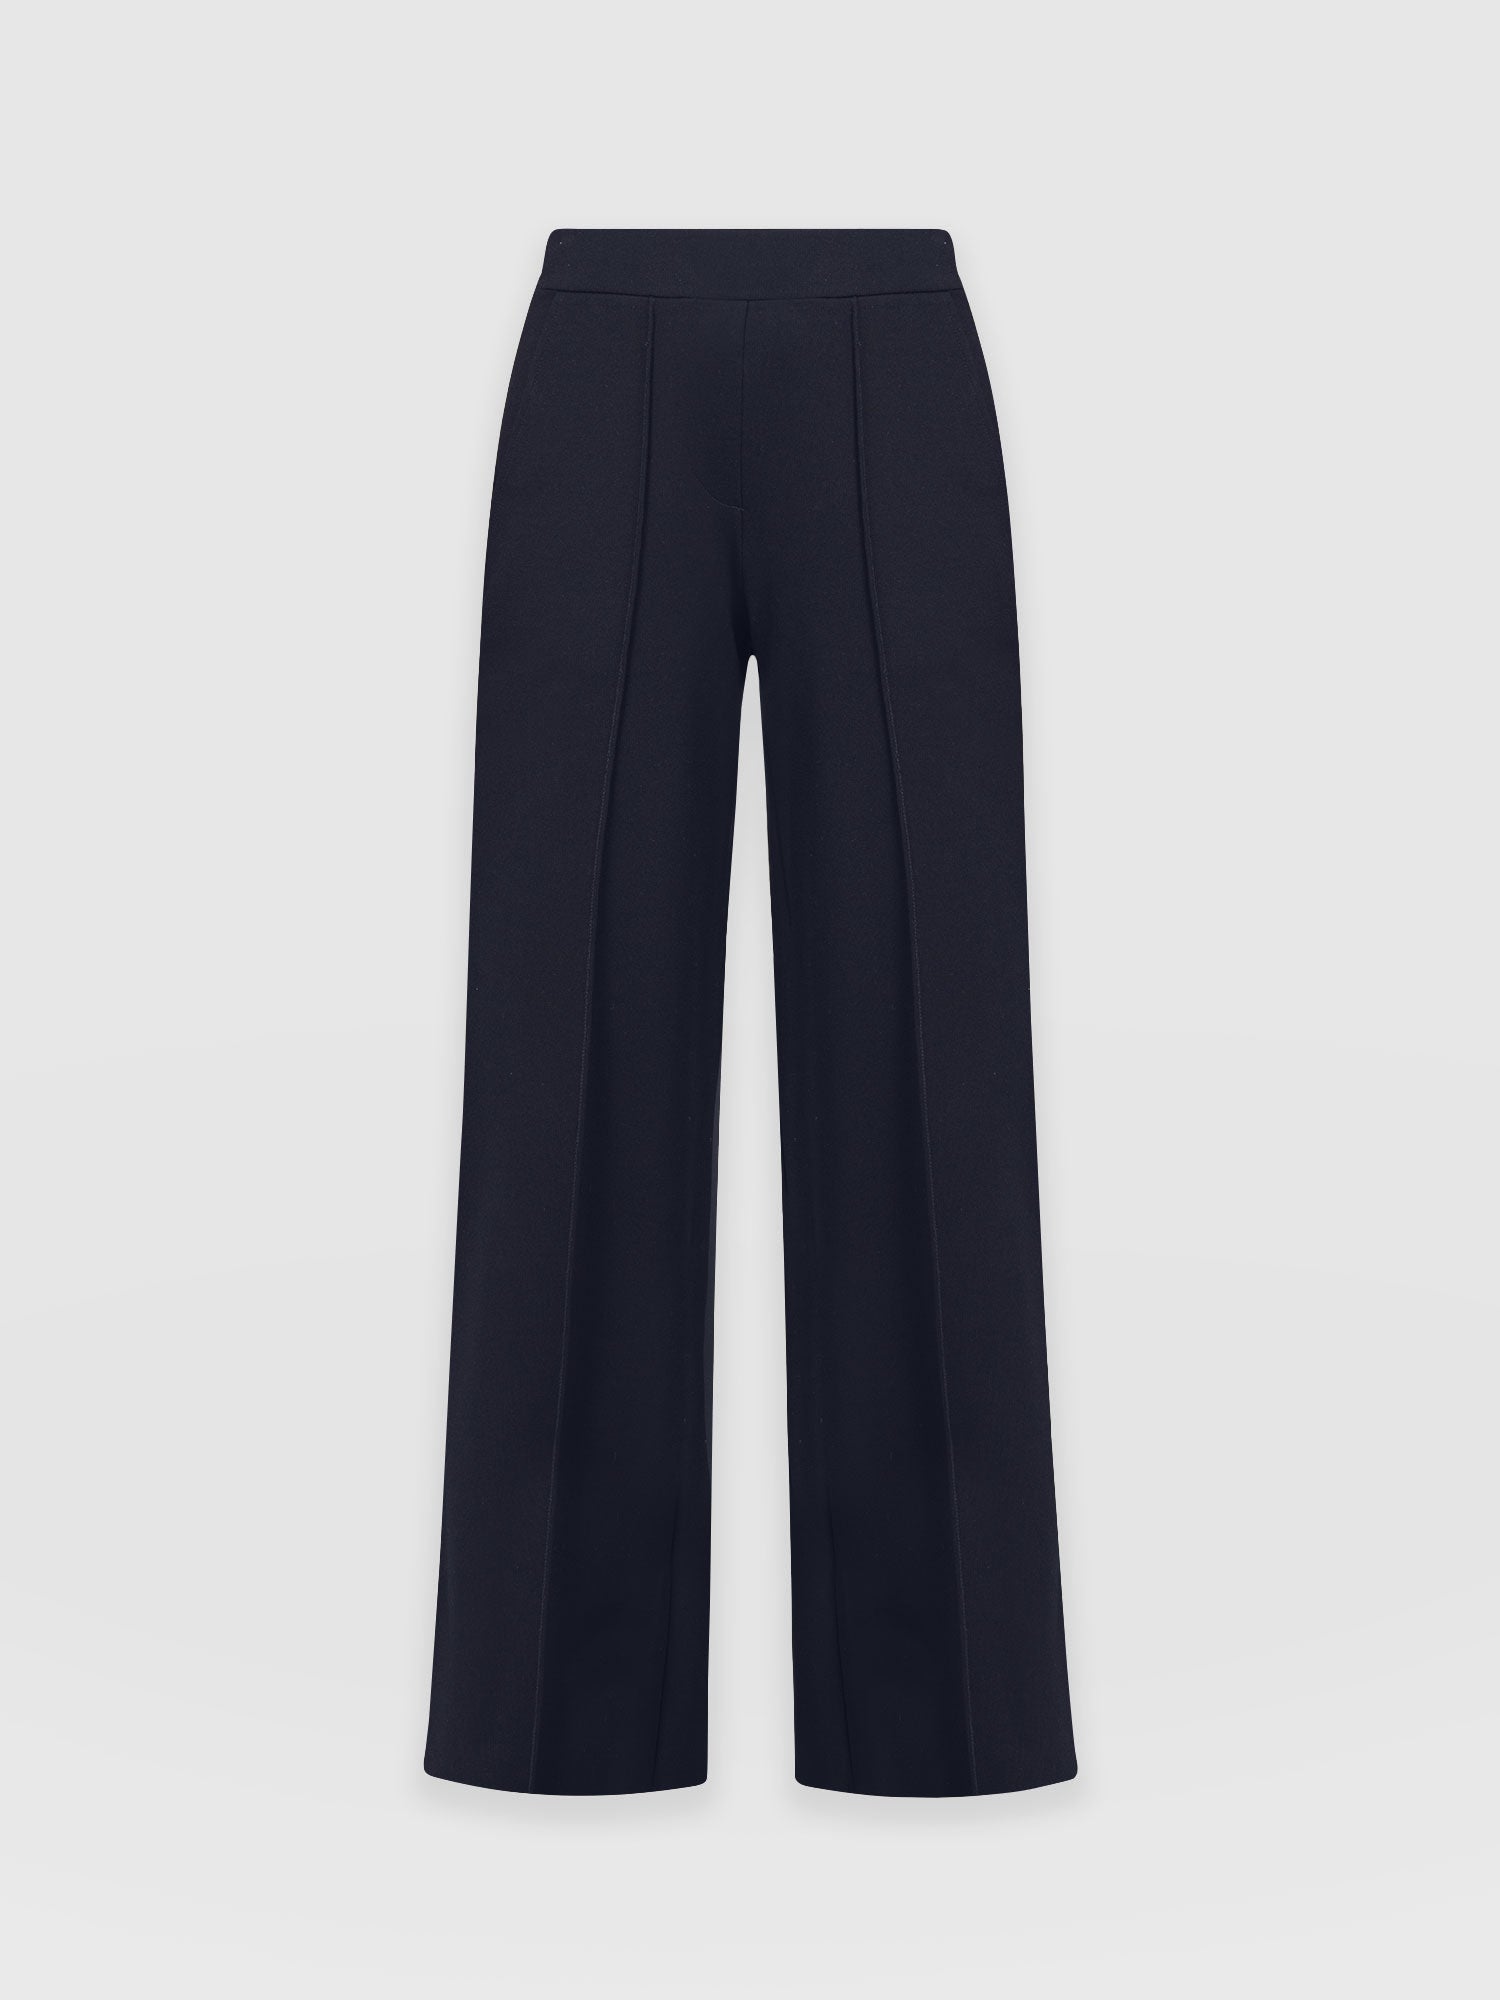 Buy Women Green Solid Formal Regular Fit Trousers Online - 759430 | Van  Heusen